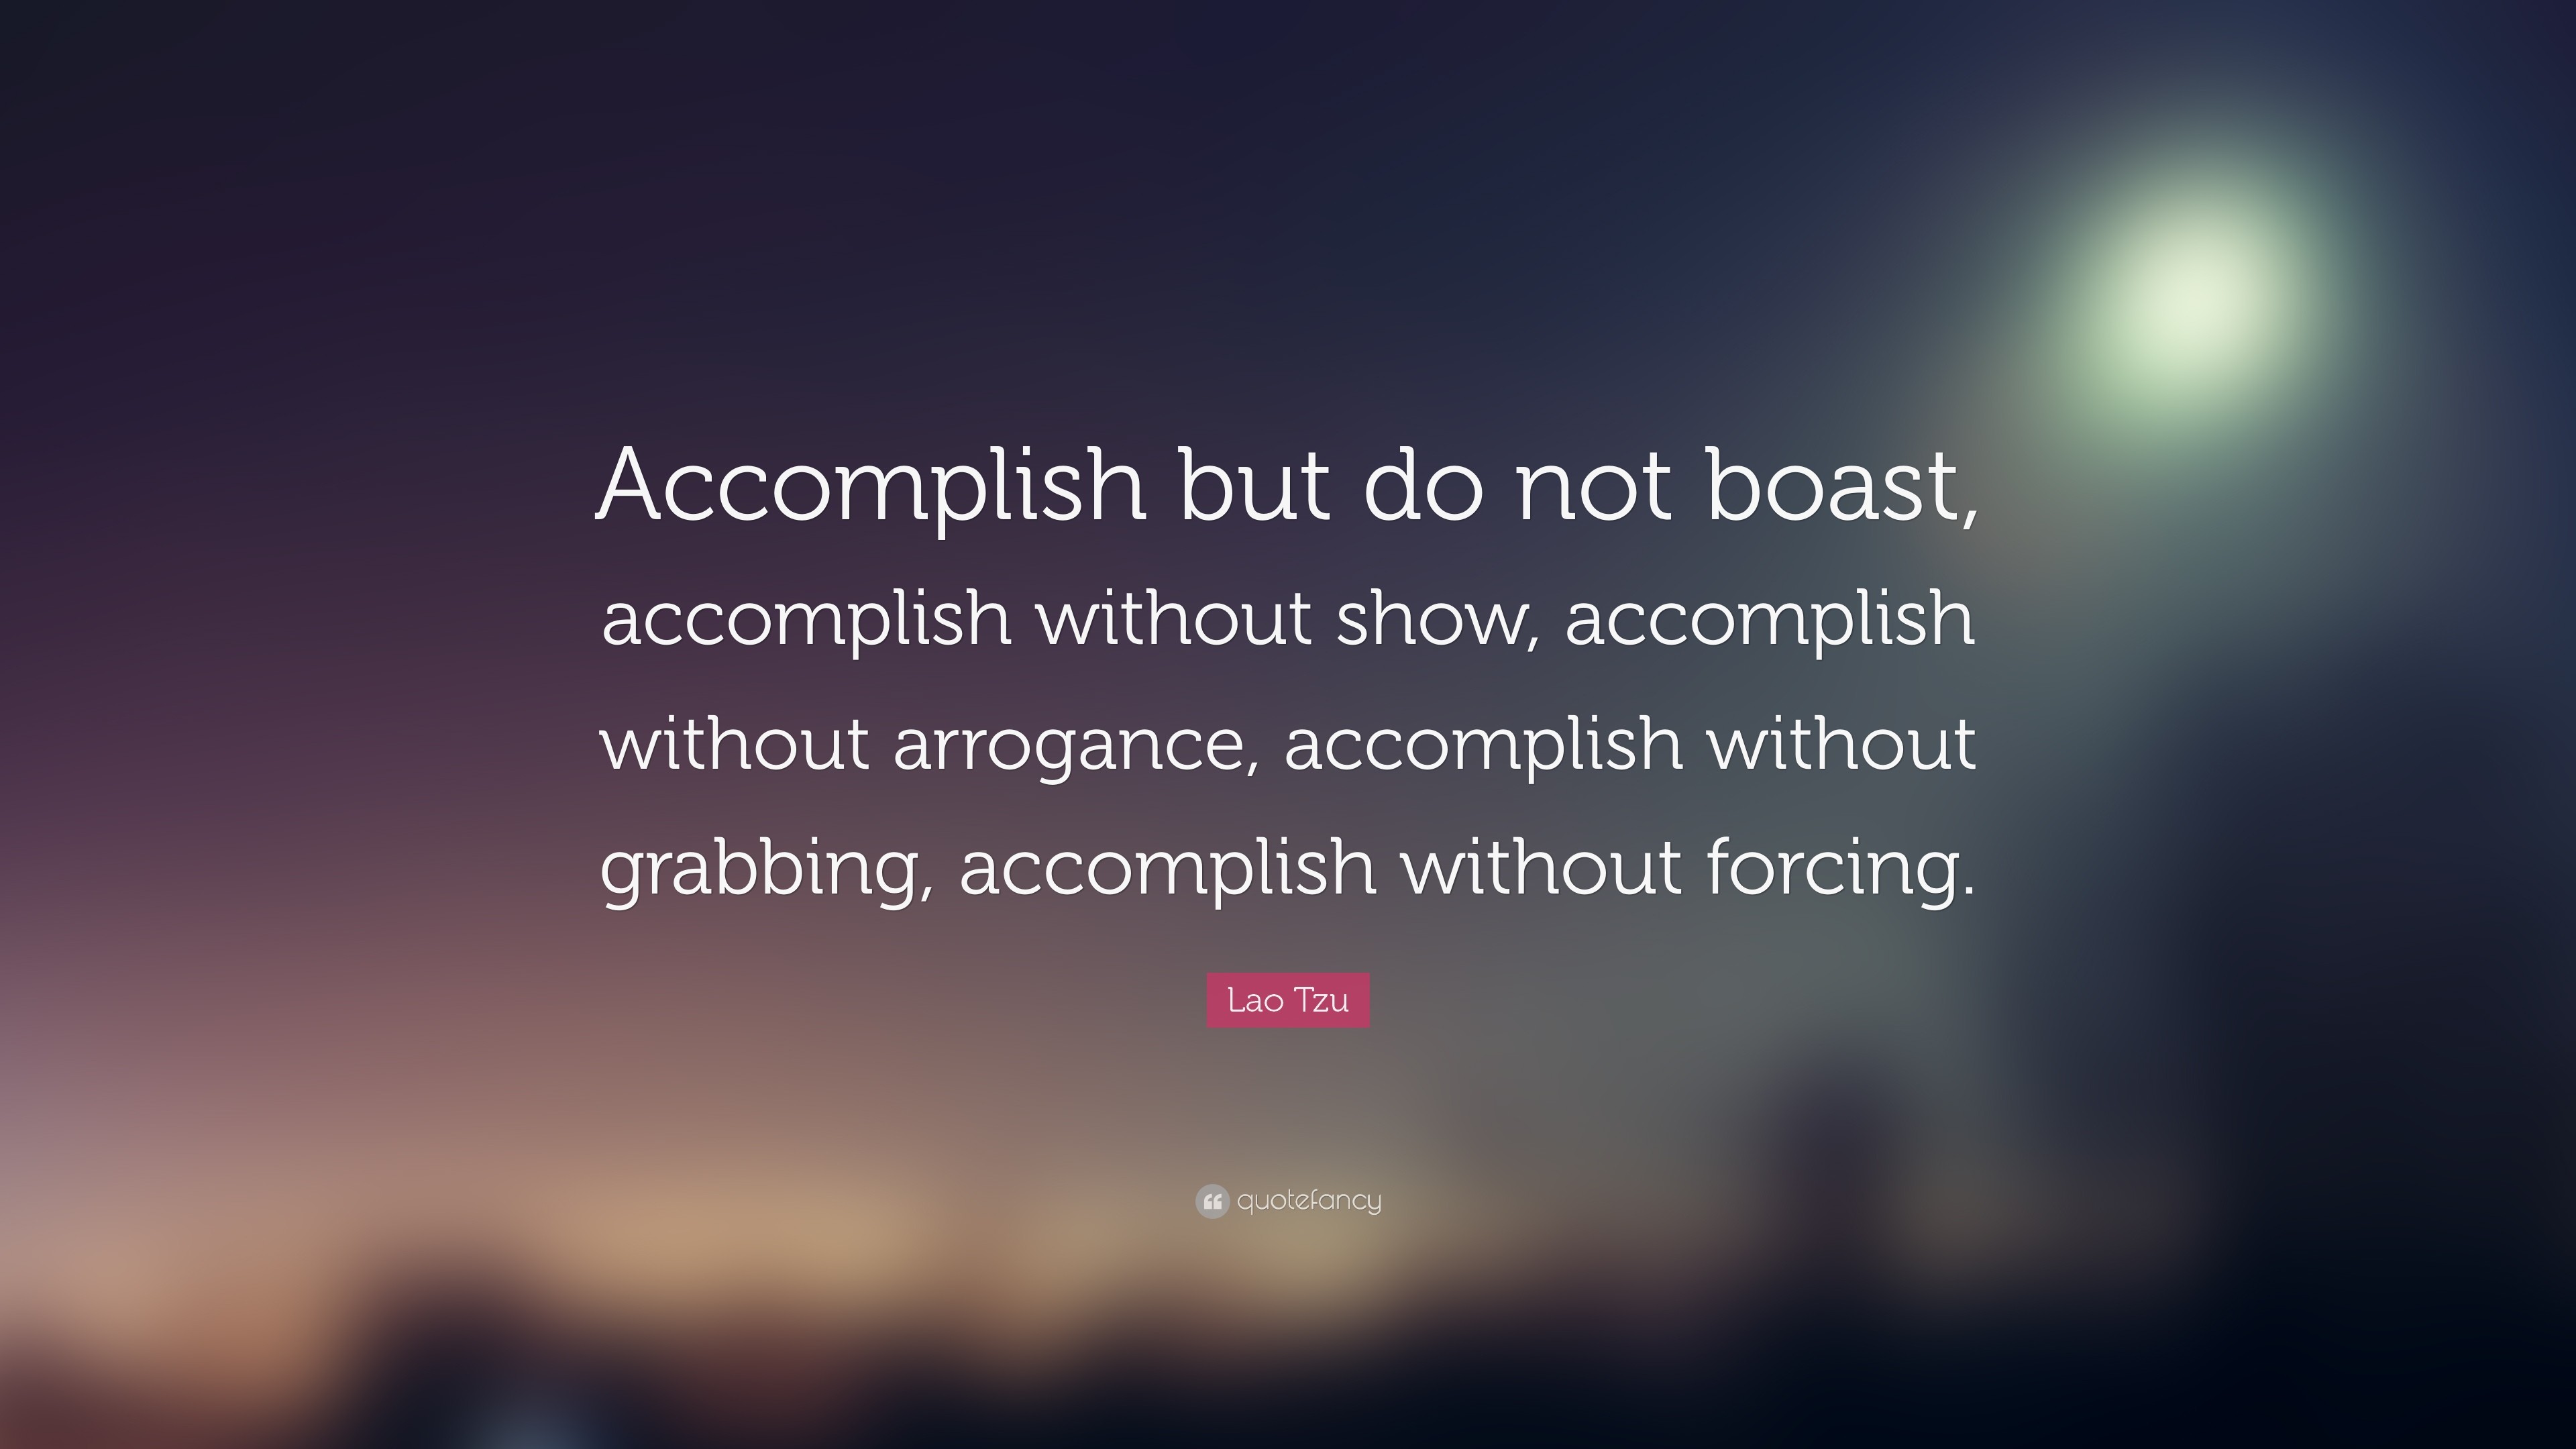 3840x2160 Lao Tzu Quote: “Accomplish but do not boast, accomplish without show,  accomplish